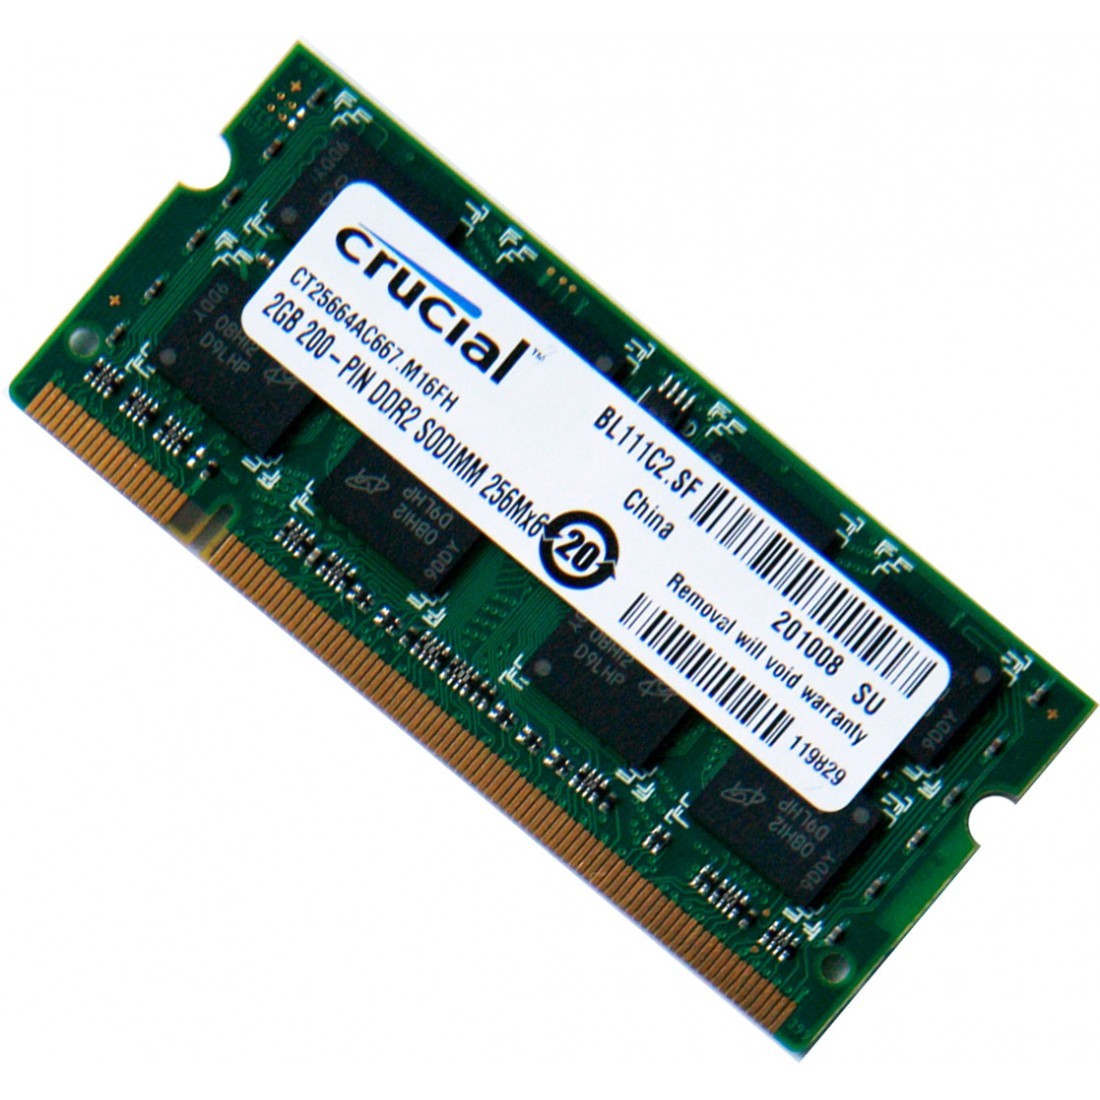 I de fleste tilfælde indre Overstige رم لپ تاپ Notebook Memory DDR2 667MHZ 5300 2GB